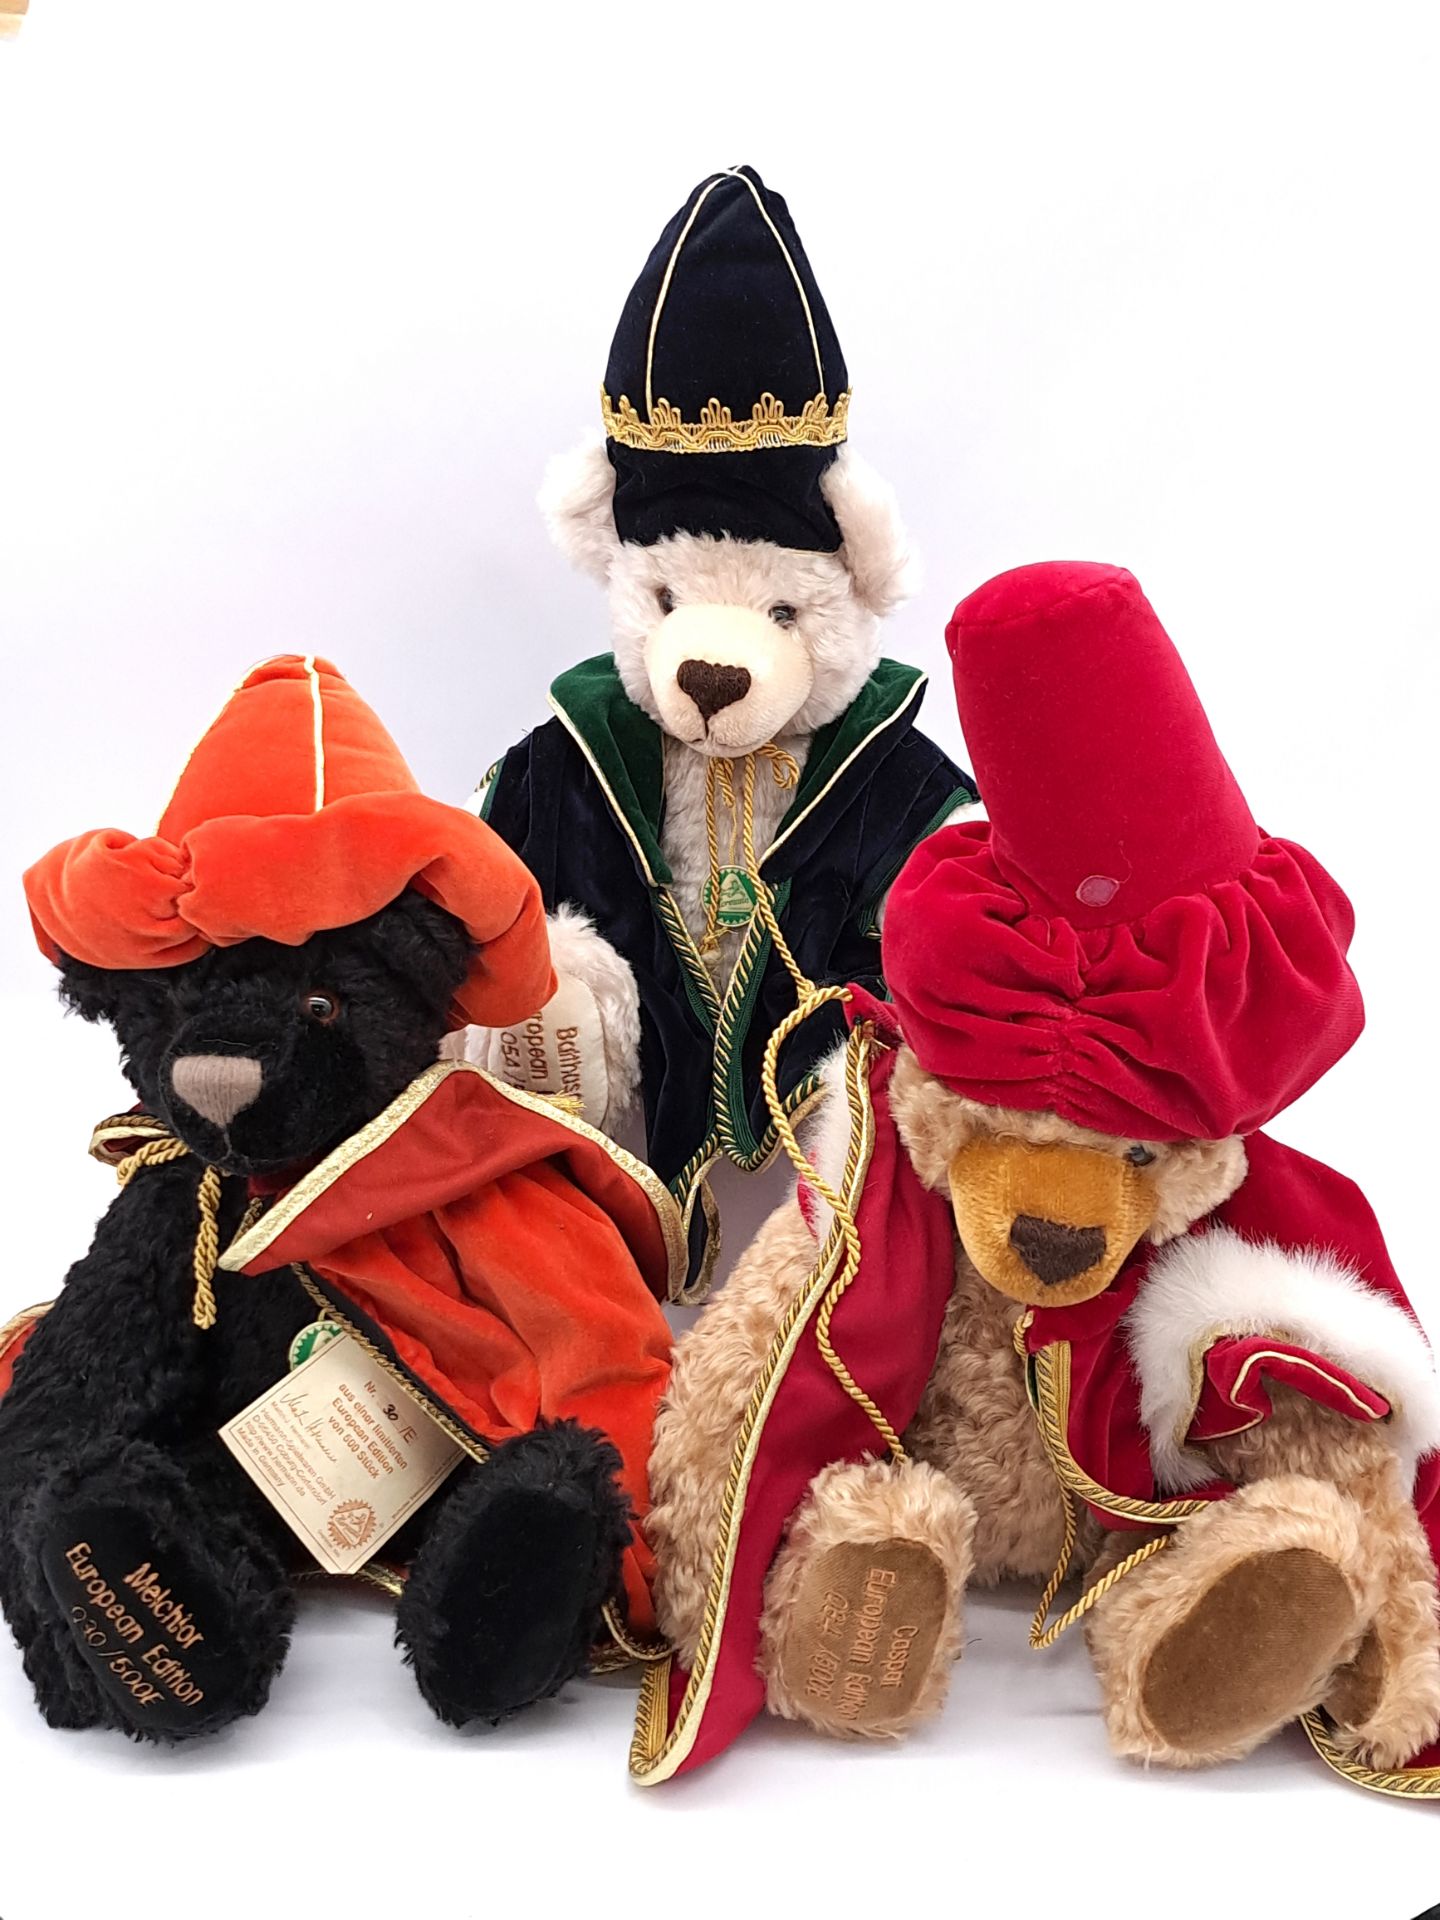 Hermann-Spielwaren trio of Three Wise Men teddy bears